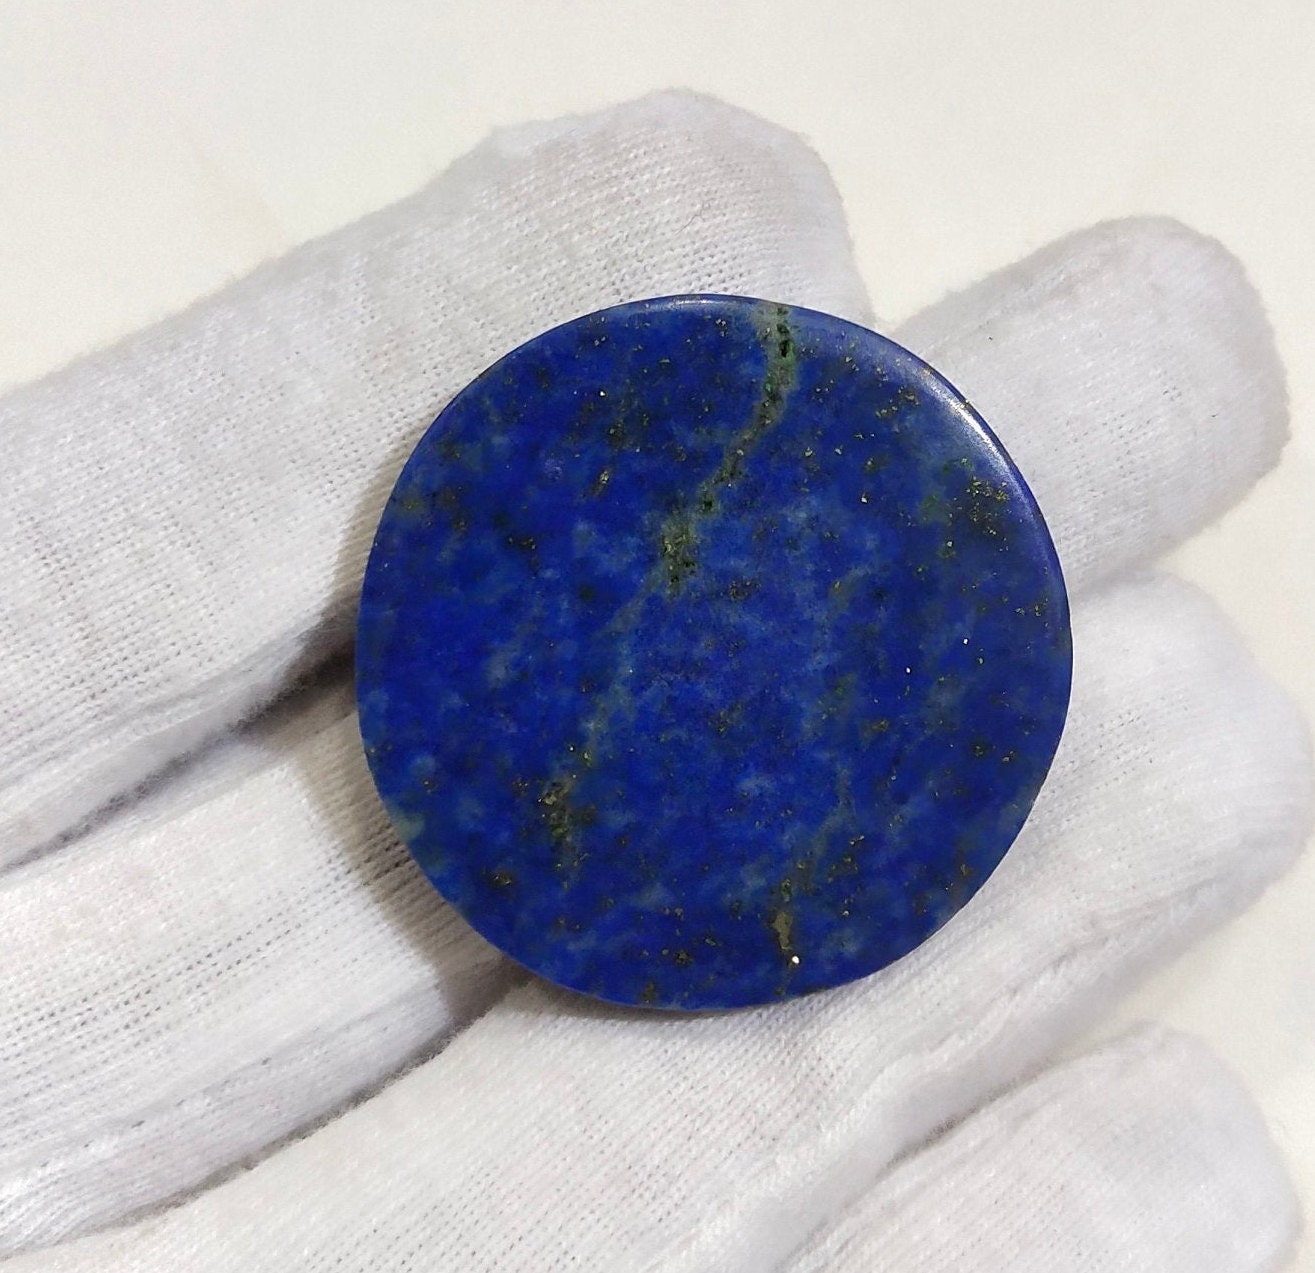 100 Natural Lapis Lazuli Cabochon Round Shape Stone Loose Etsy